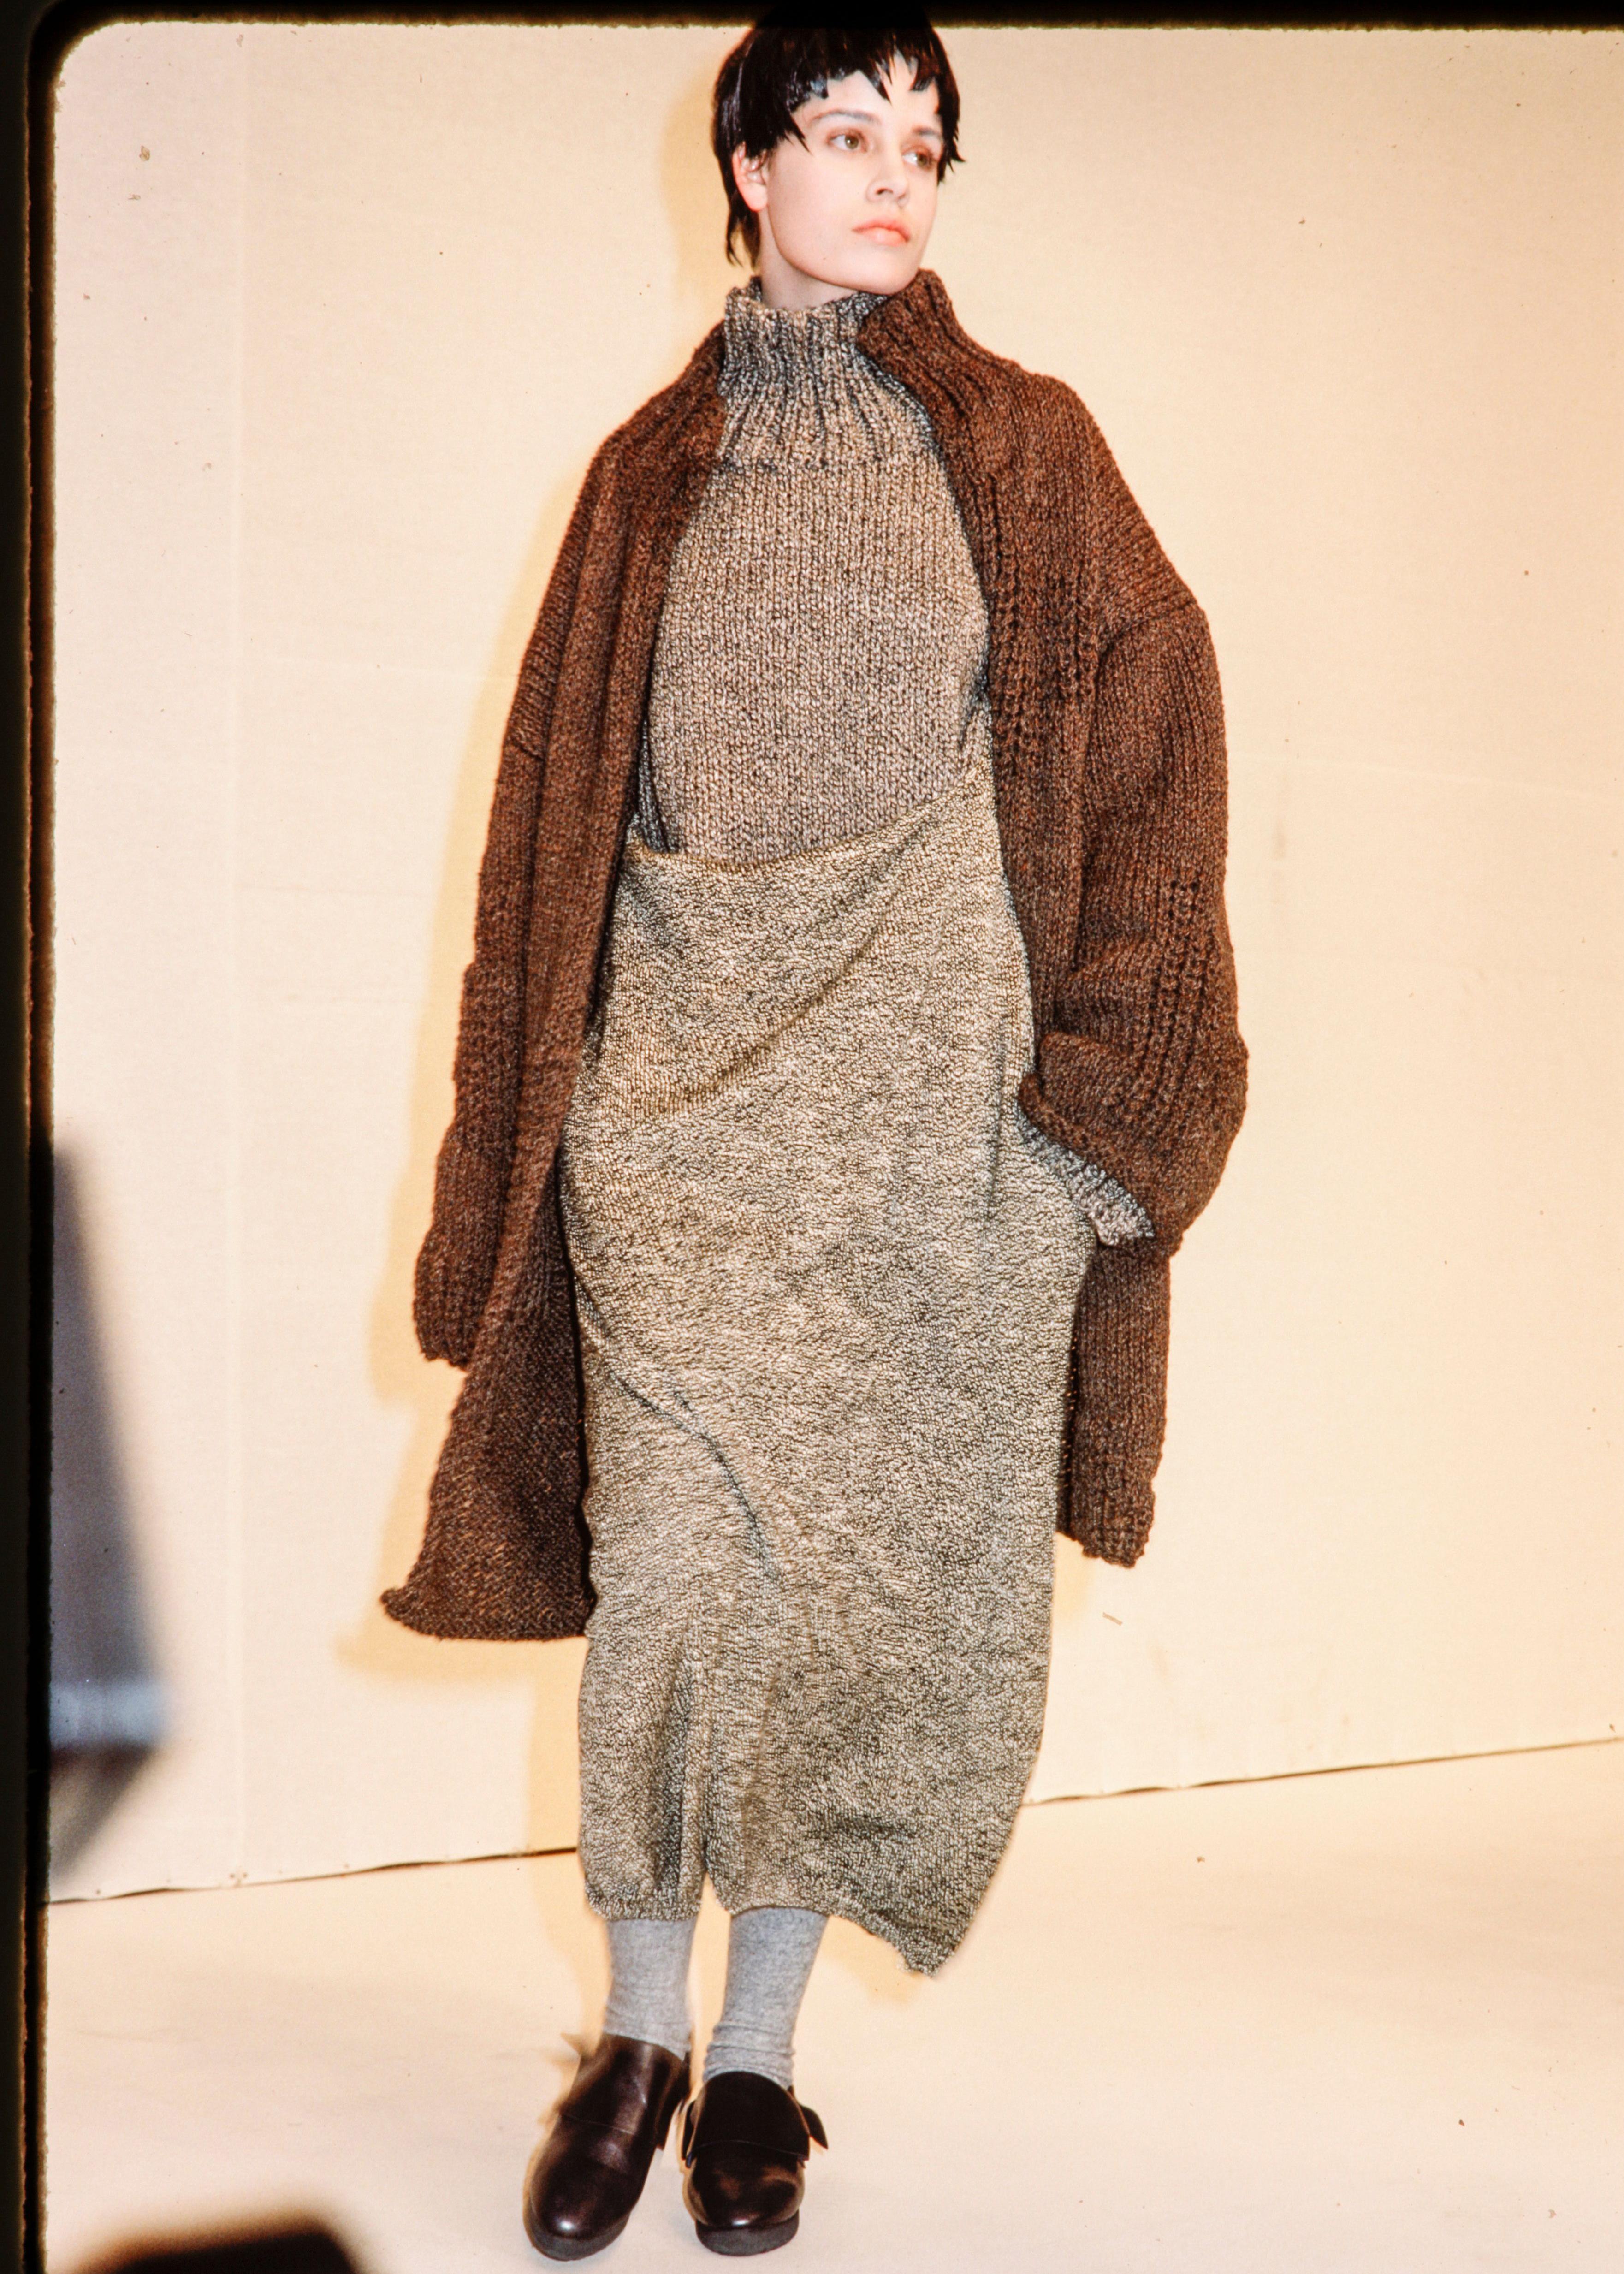 Yohji Yamamoto cardigan oversize et pull à col roulé en laine tricotée marron.

Automne-Hiver 1984